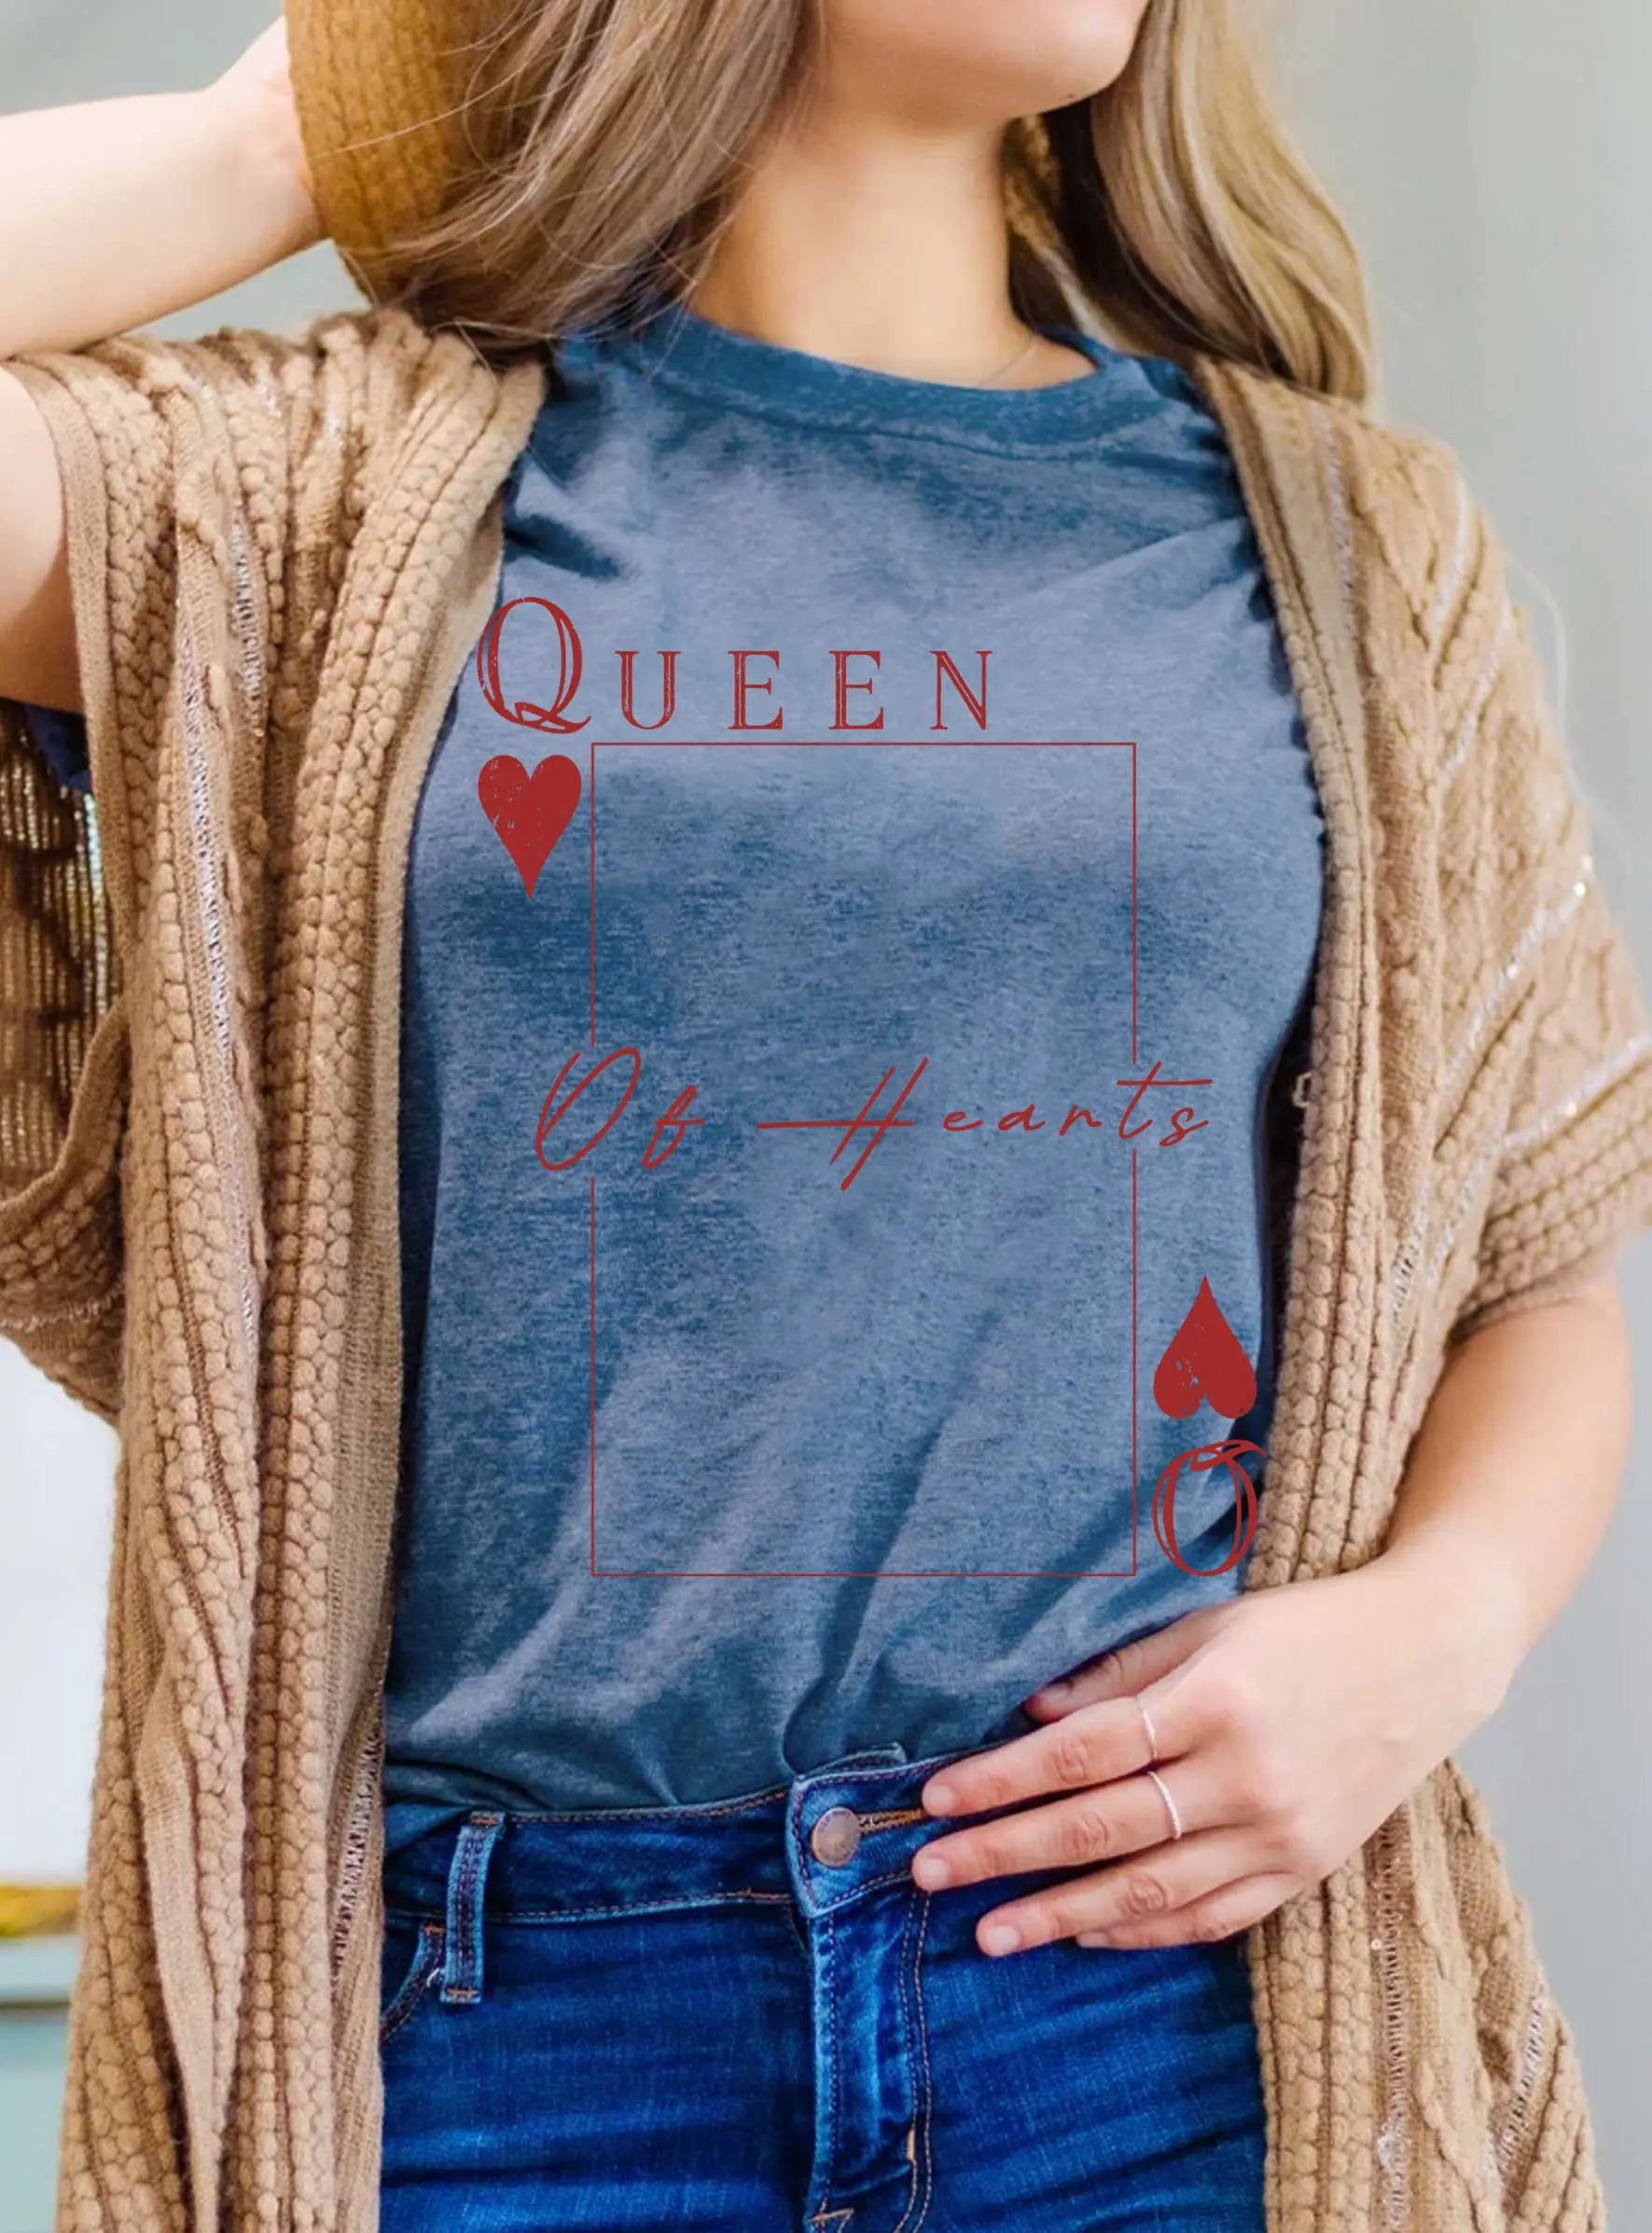 Queen of hearts tee